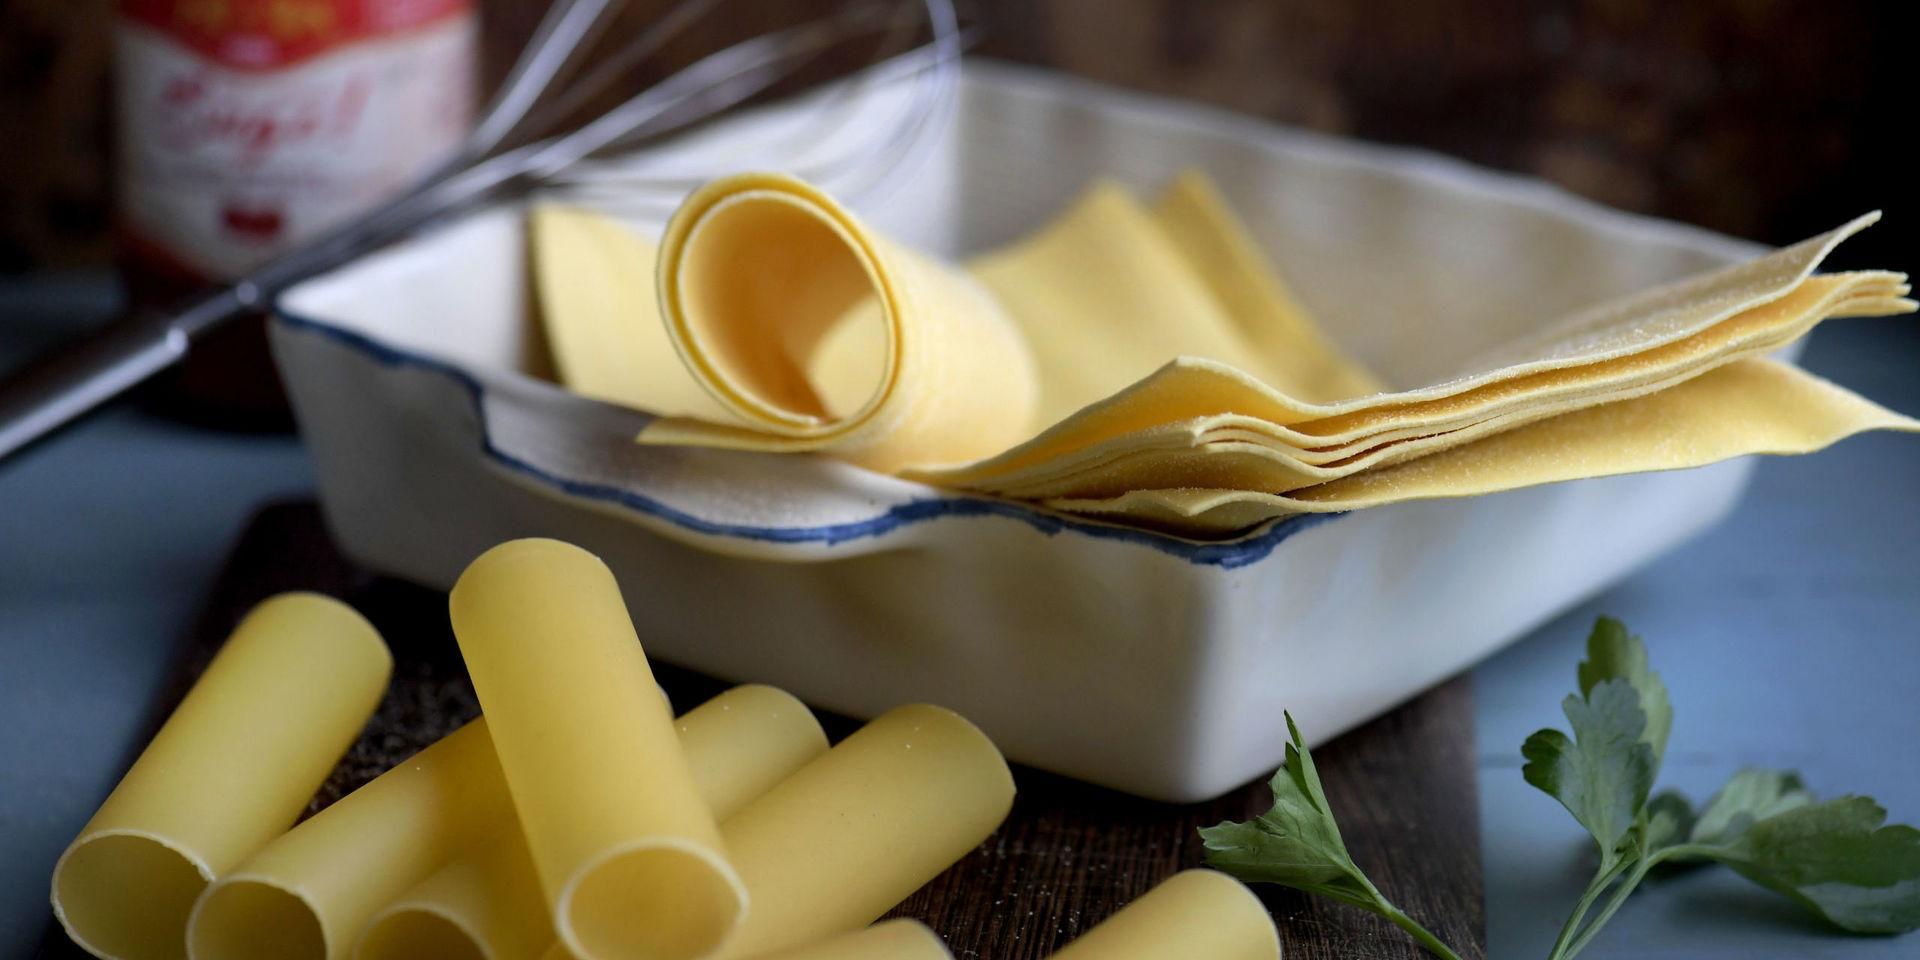 Cannelloni är pastarör som fylls med valfria godsaker och sedan gratineras med sås i ugnen. Värt att prova att laga själv om du inte gjort det!